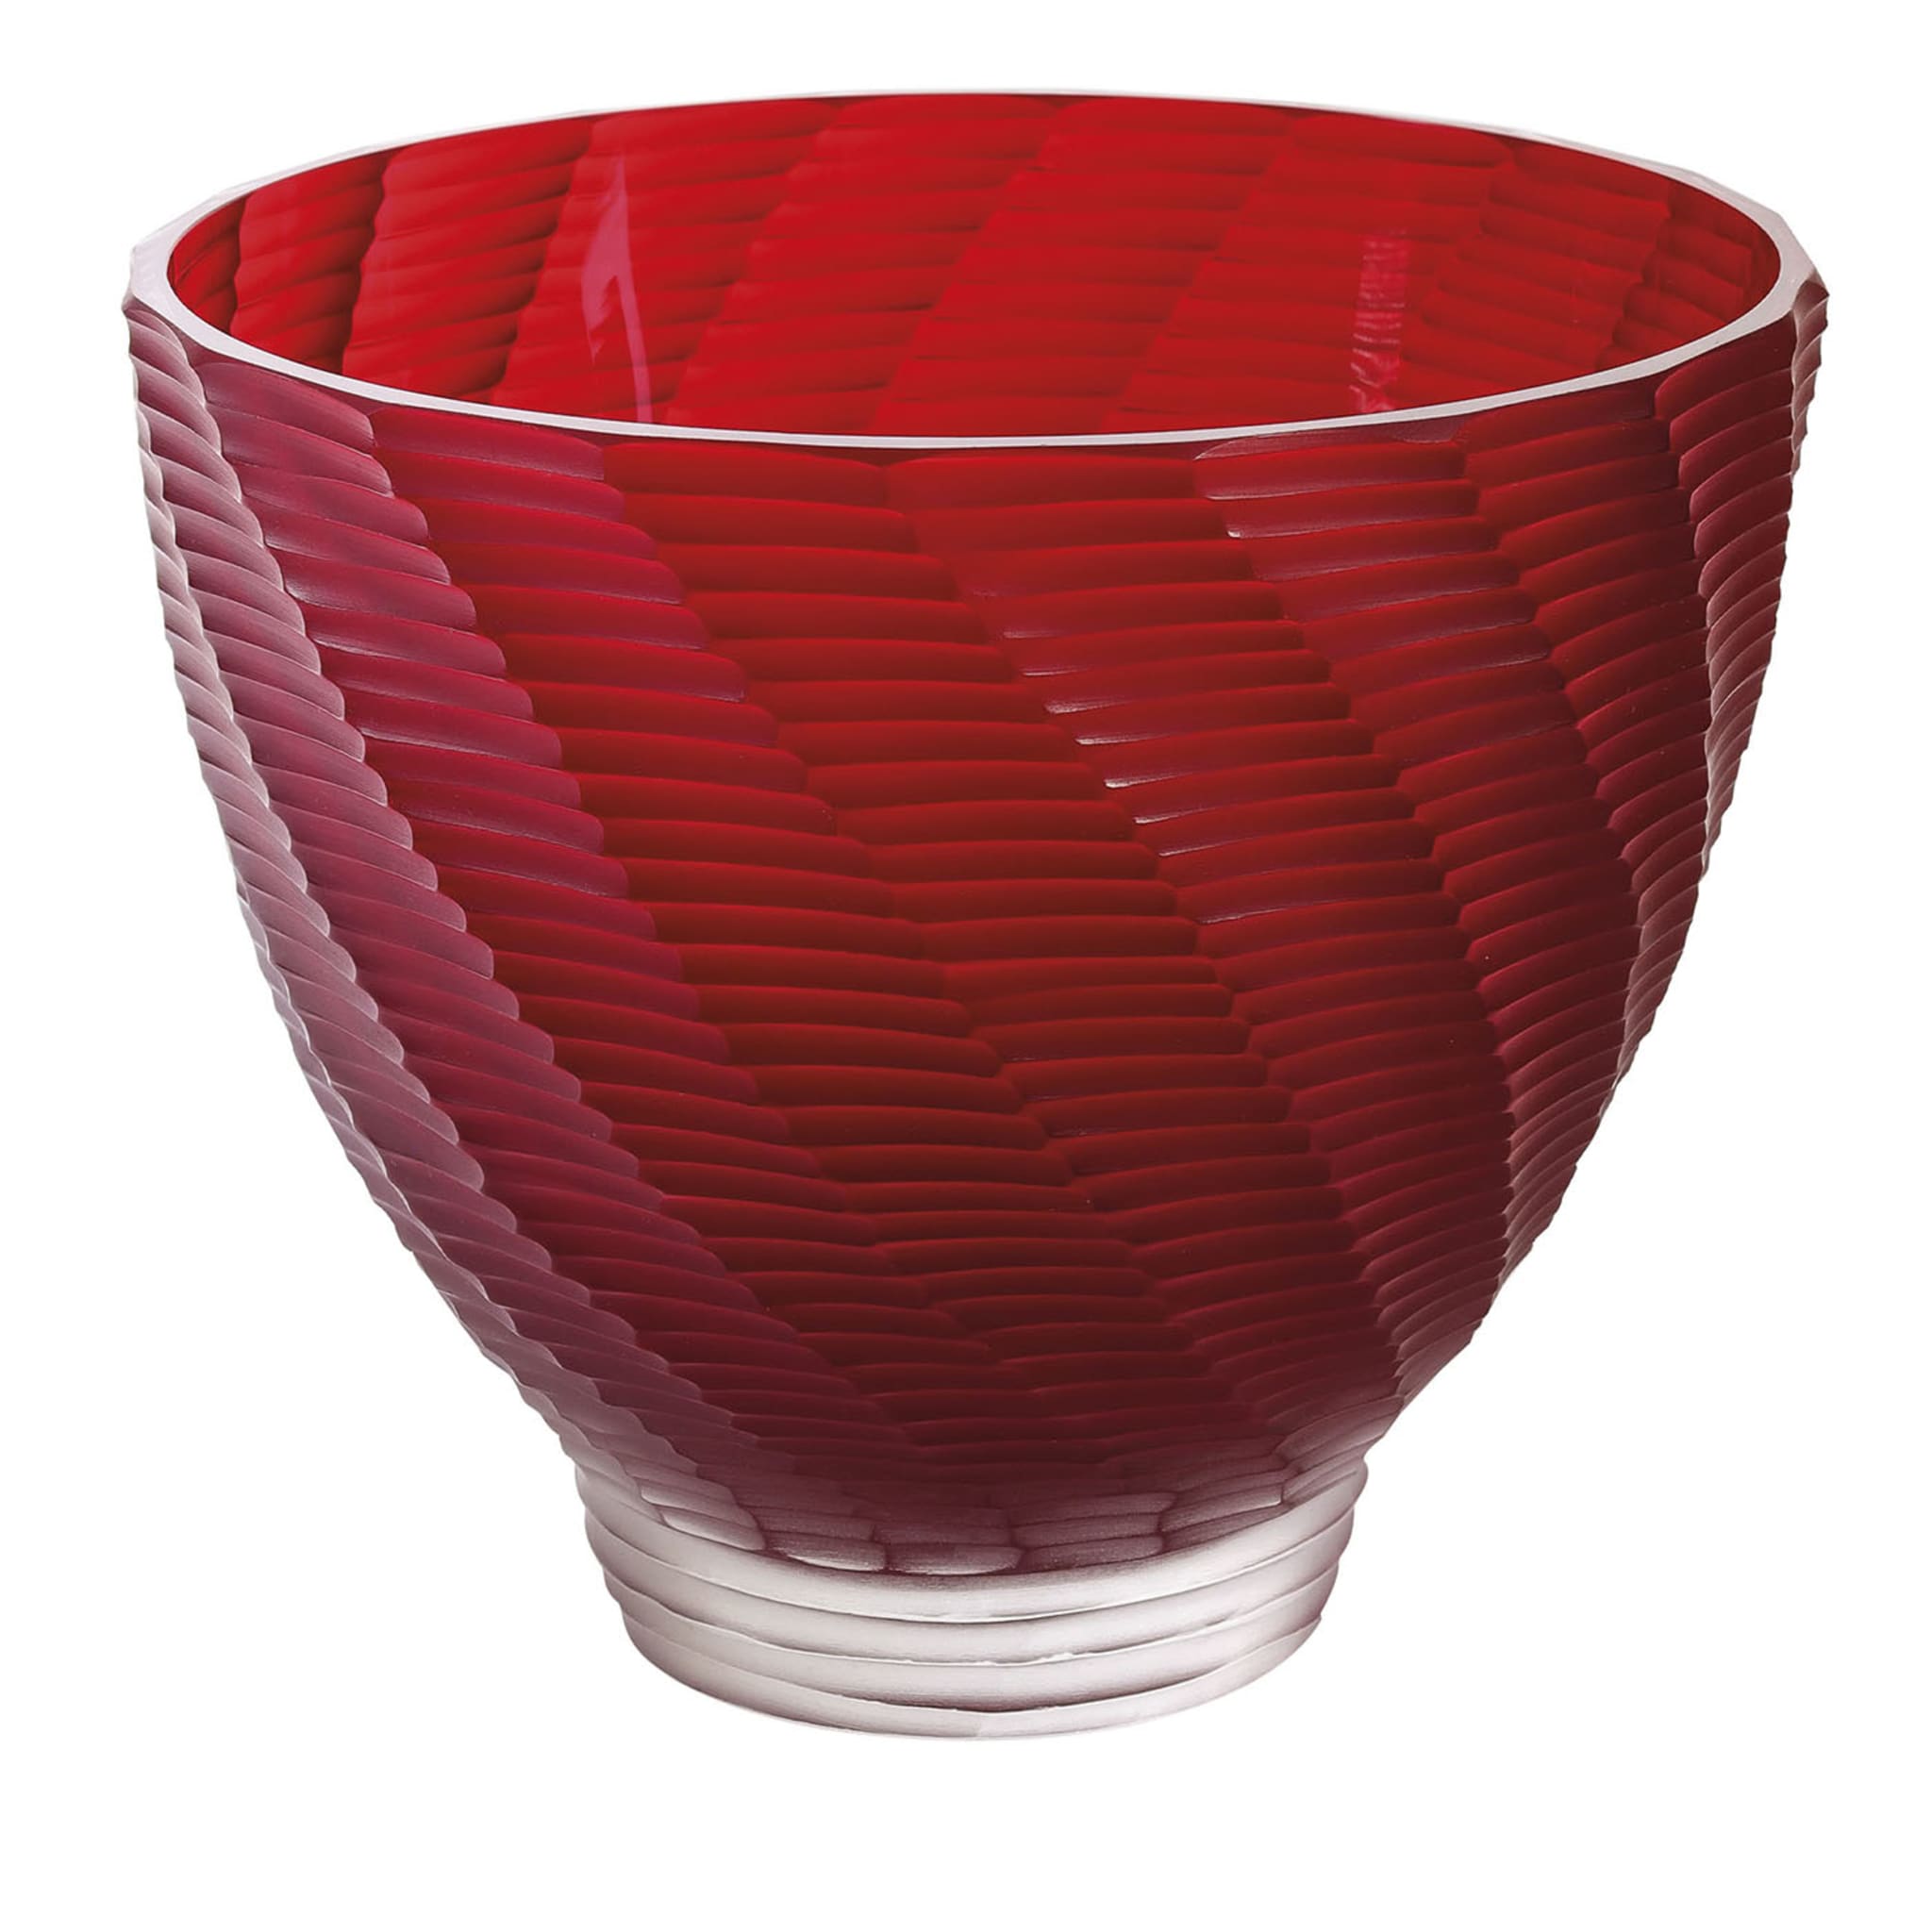 Red Murano Glass Vase - Main view